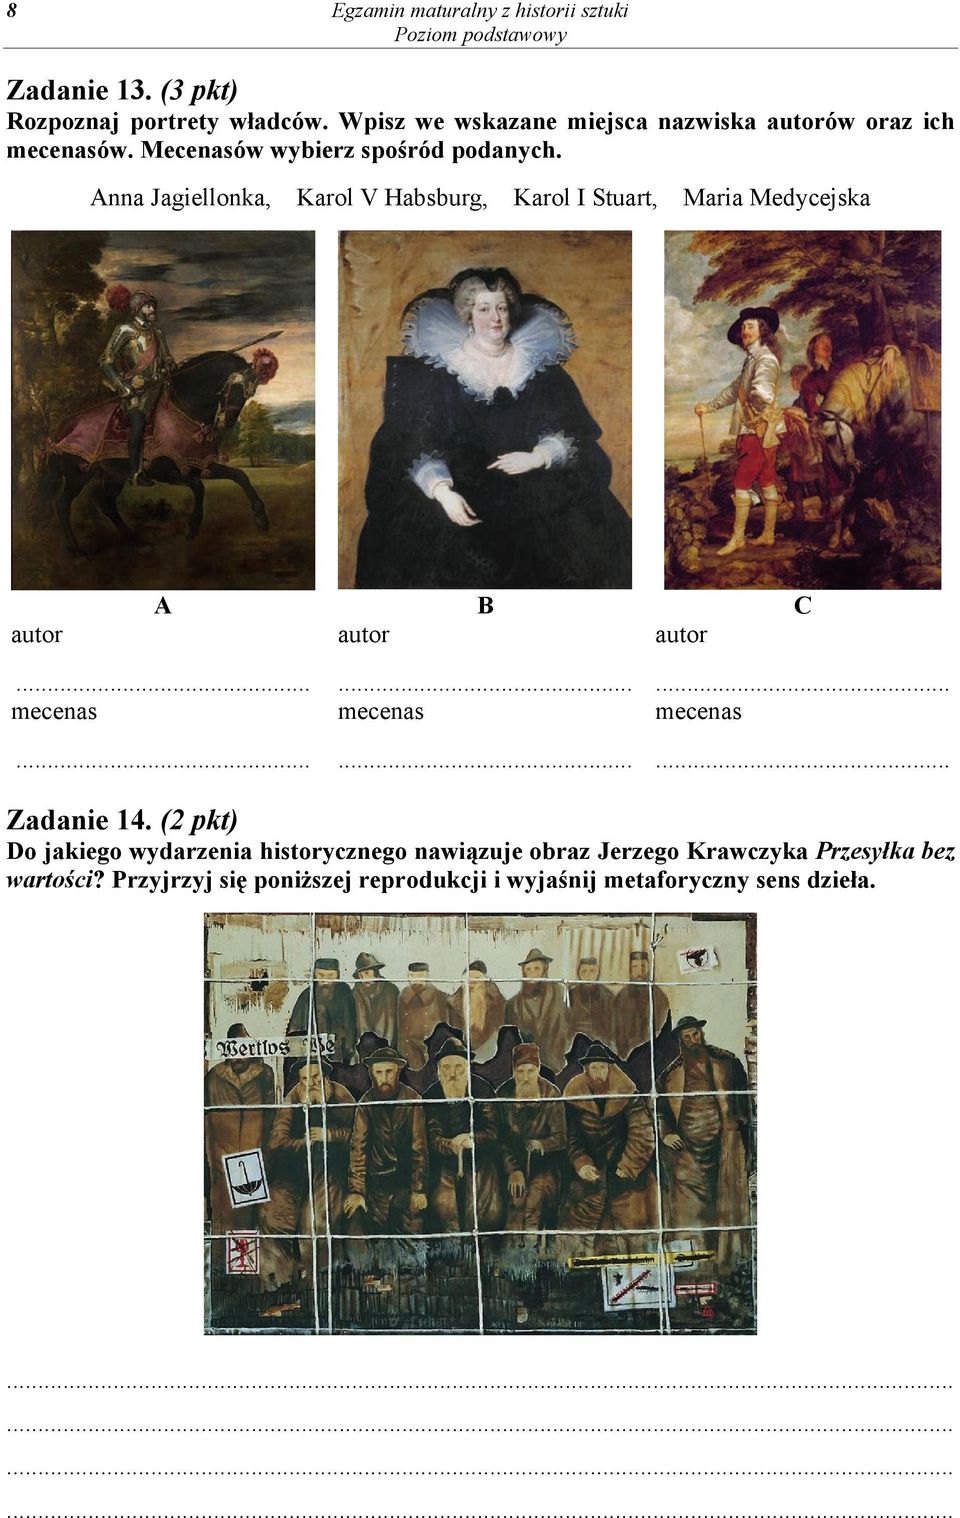 Anna Jagiellonka, Karol V Habsburg, Karol I Stuart, Maria Medycejska autor A B C autor autor... mecenas...... mecenas...... mecenas... Zadanie 14.